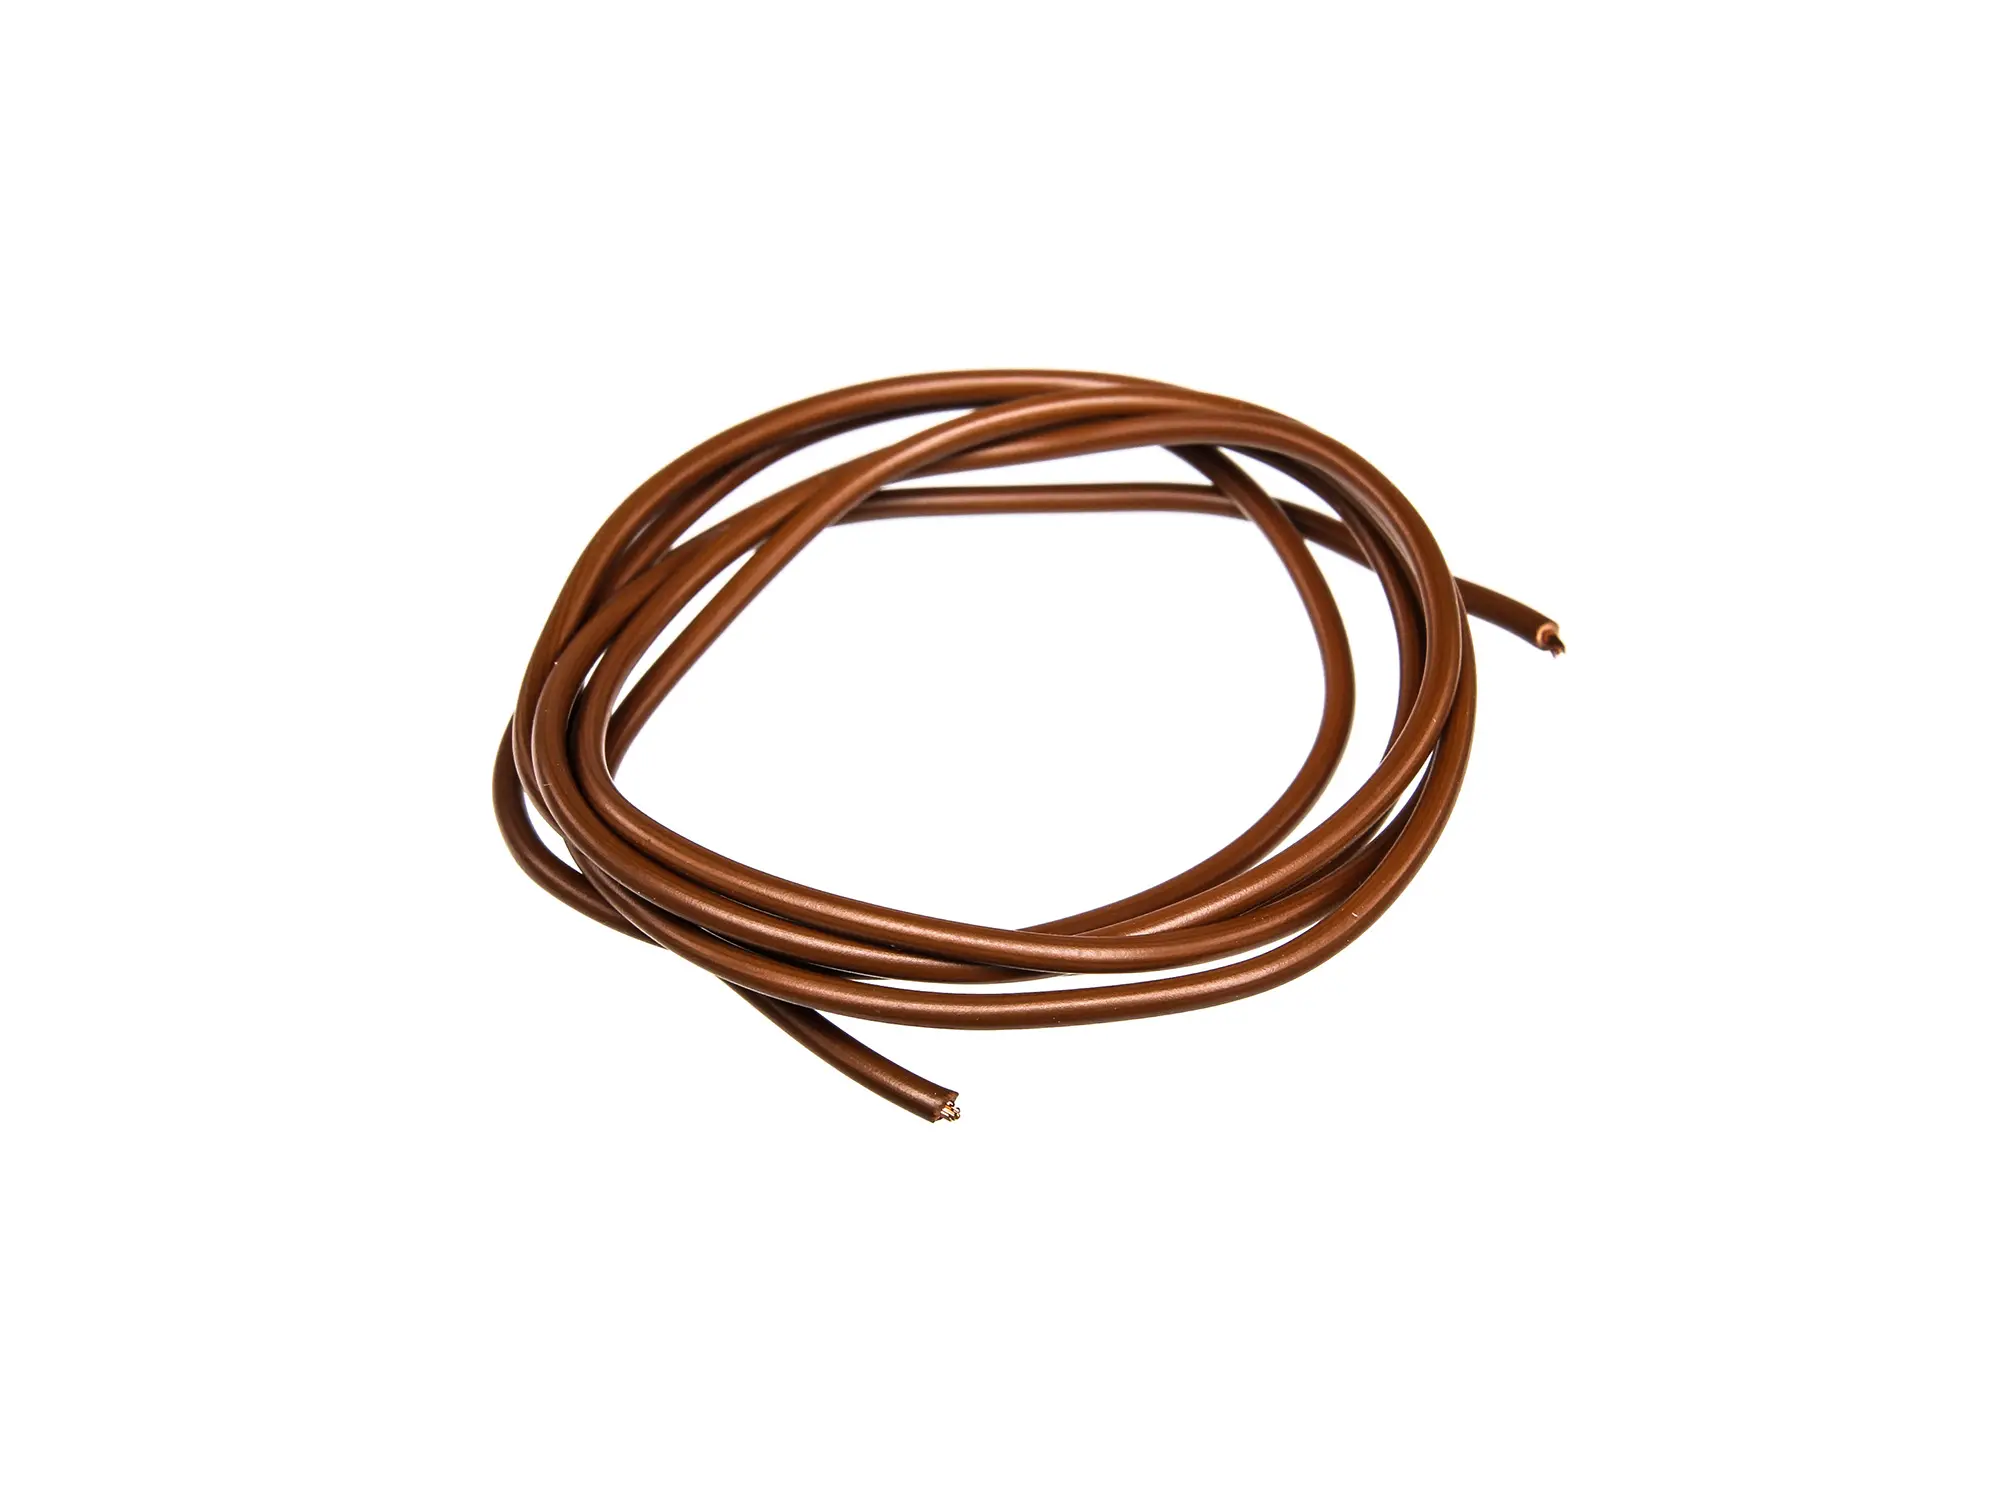 Kabel - Braun 0,75mm² Fahrzeugleitung - 1m, Art.-Nr.: 10001781 - Bild 1